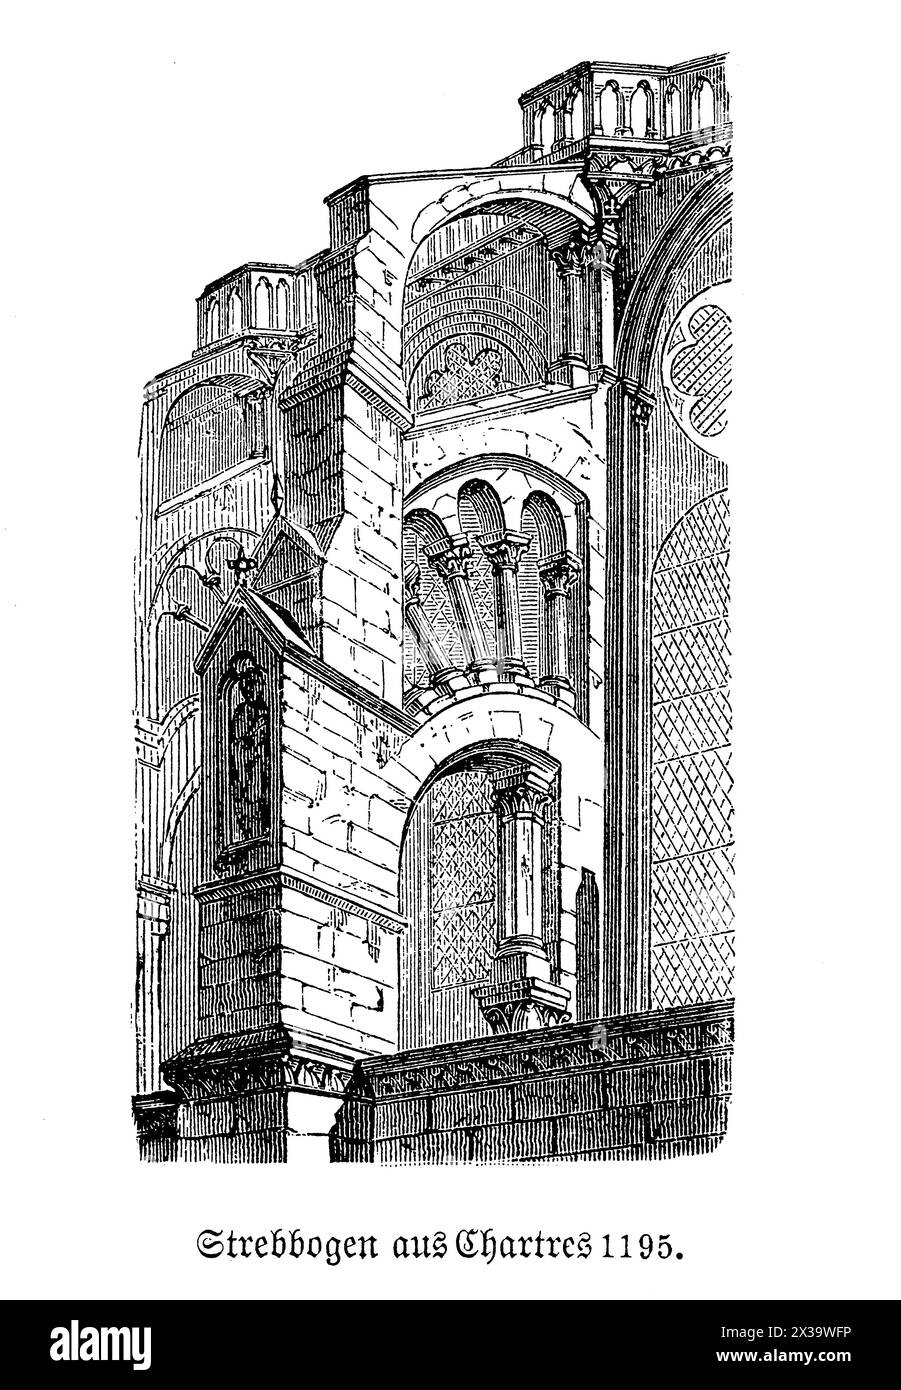 Il contrafforto volante della cattedrale di Chartres è un esempio di architettura gotica, progettato per sostenere le alte pareti della cattedrale e consentire finestre più grandi e più luce. Situato a Chartres, in Francia, questo elemento architettonico è funzionale ed esteticamente suggestivo, caratterizzato dal suo design ad arco che si estende dalla struttura principale ad un molo. I contrafforti sono fondamentali non solo per l'integrità strutturale, ma anche splendidamente decorati, spesso caratterizzati da intricate incisioni e statue che esaltano l'aspetto maestoso della cattedrale Foto Stock